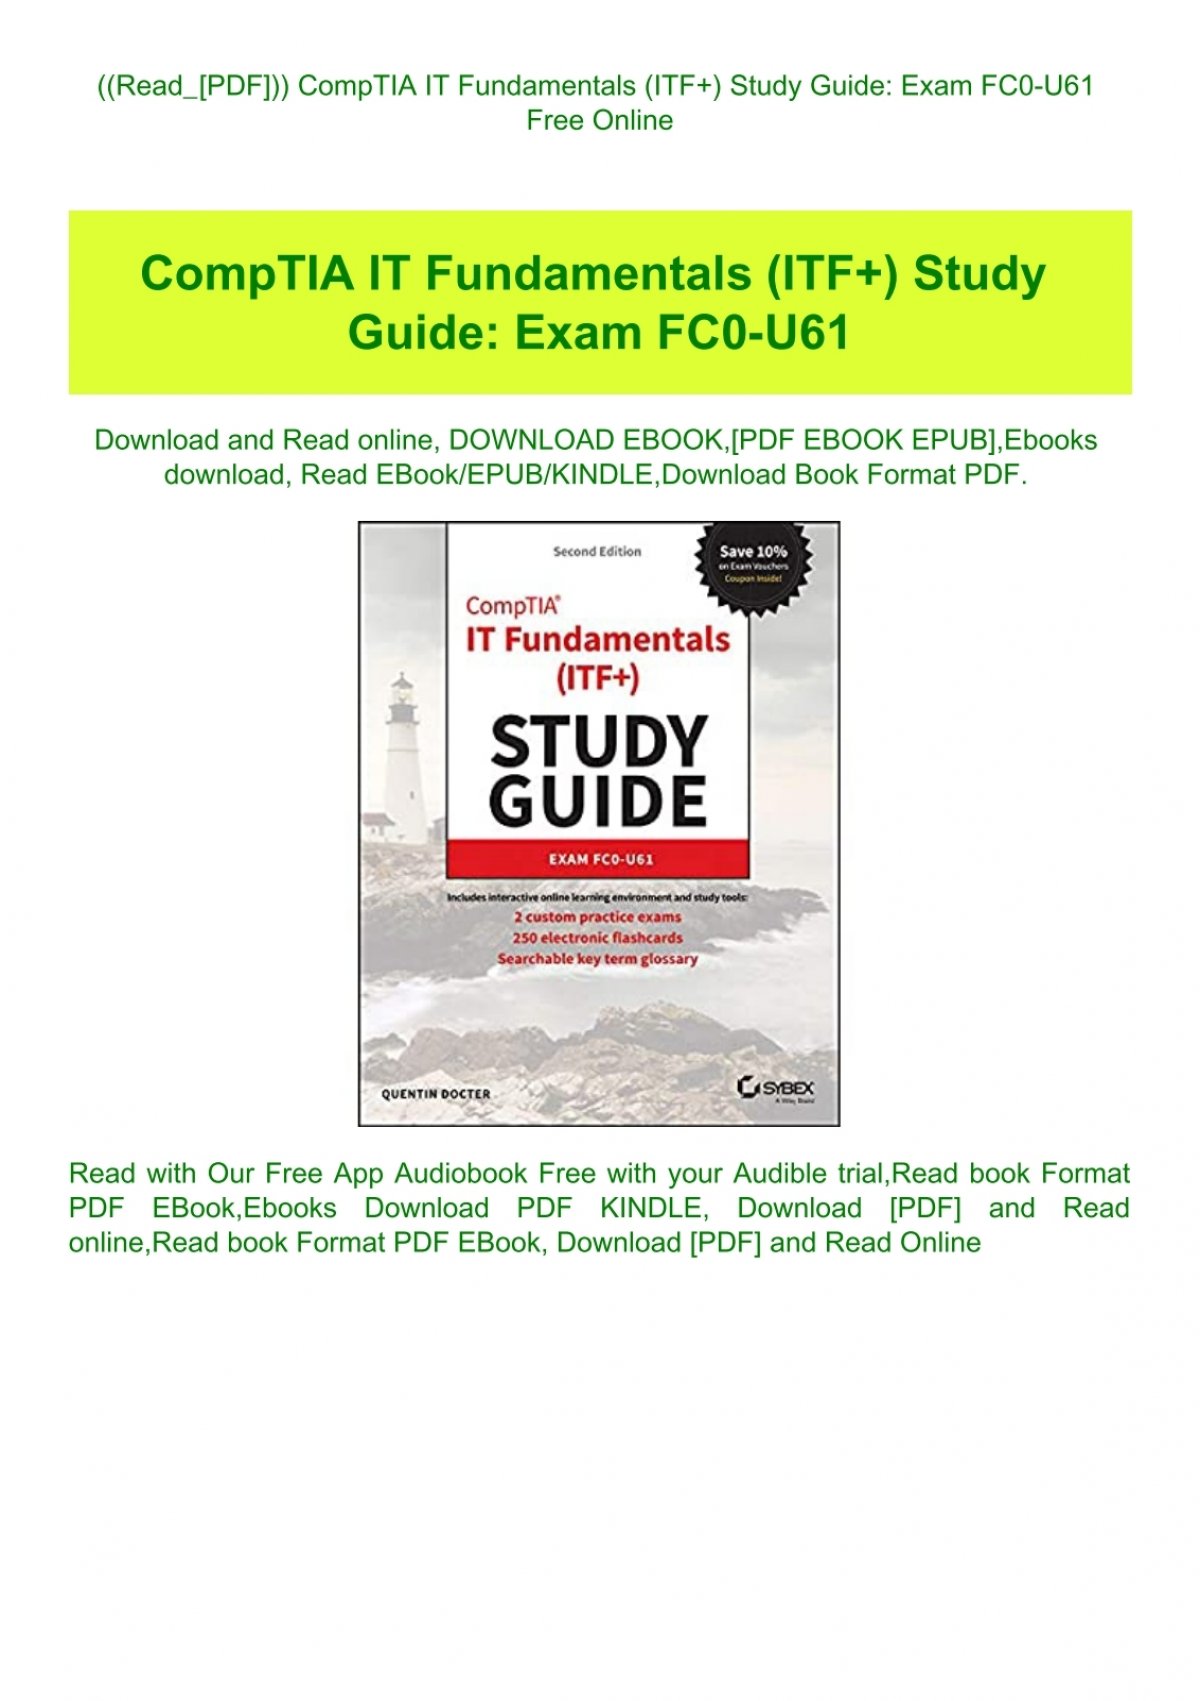 ((Read PDF )) CompTIA IT Fundamentals (ITF ) Study Guide Exam FC0 U61